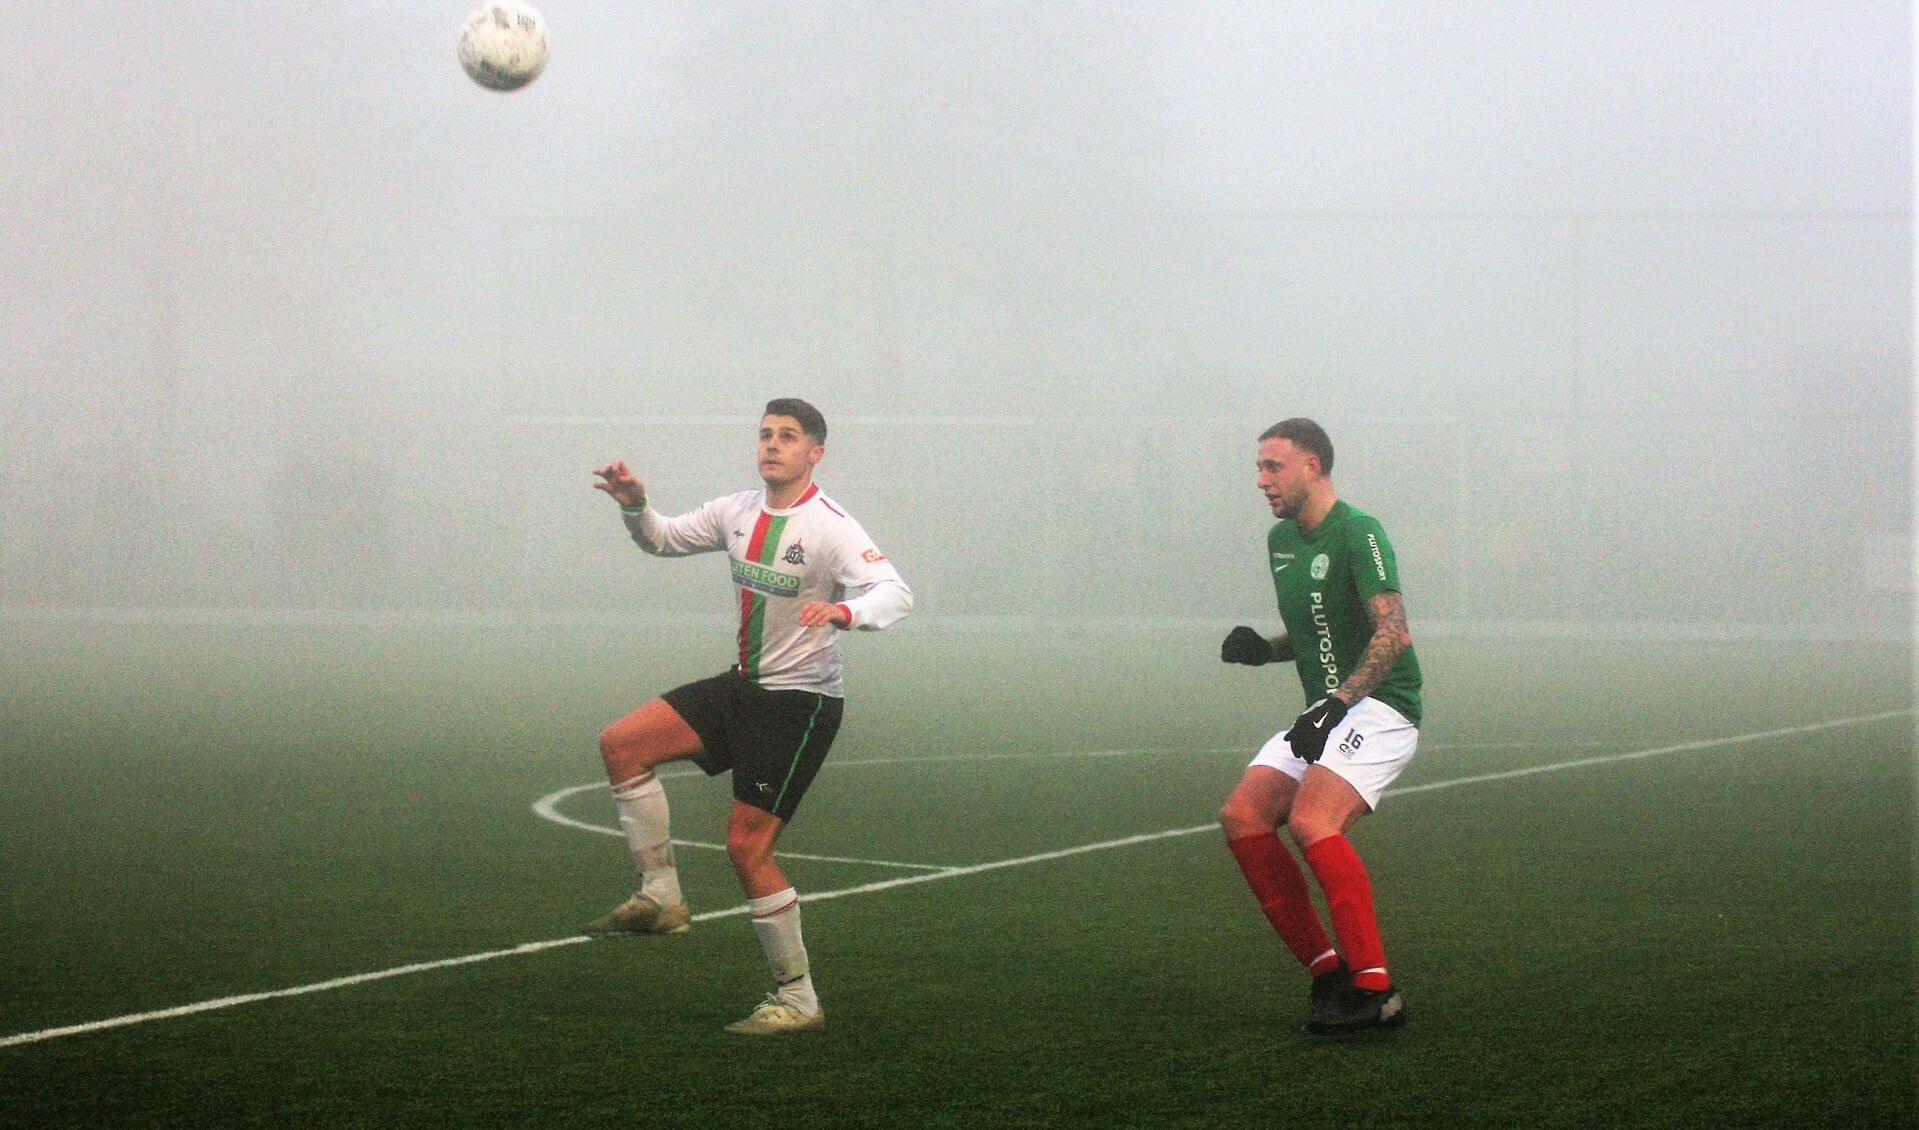 In dichte mist probeert Lorenzo Korte (Stompwijk’92) de bal onder controle te krijgen (foto: AW).